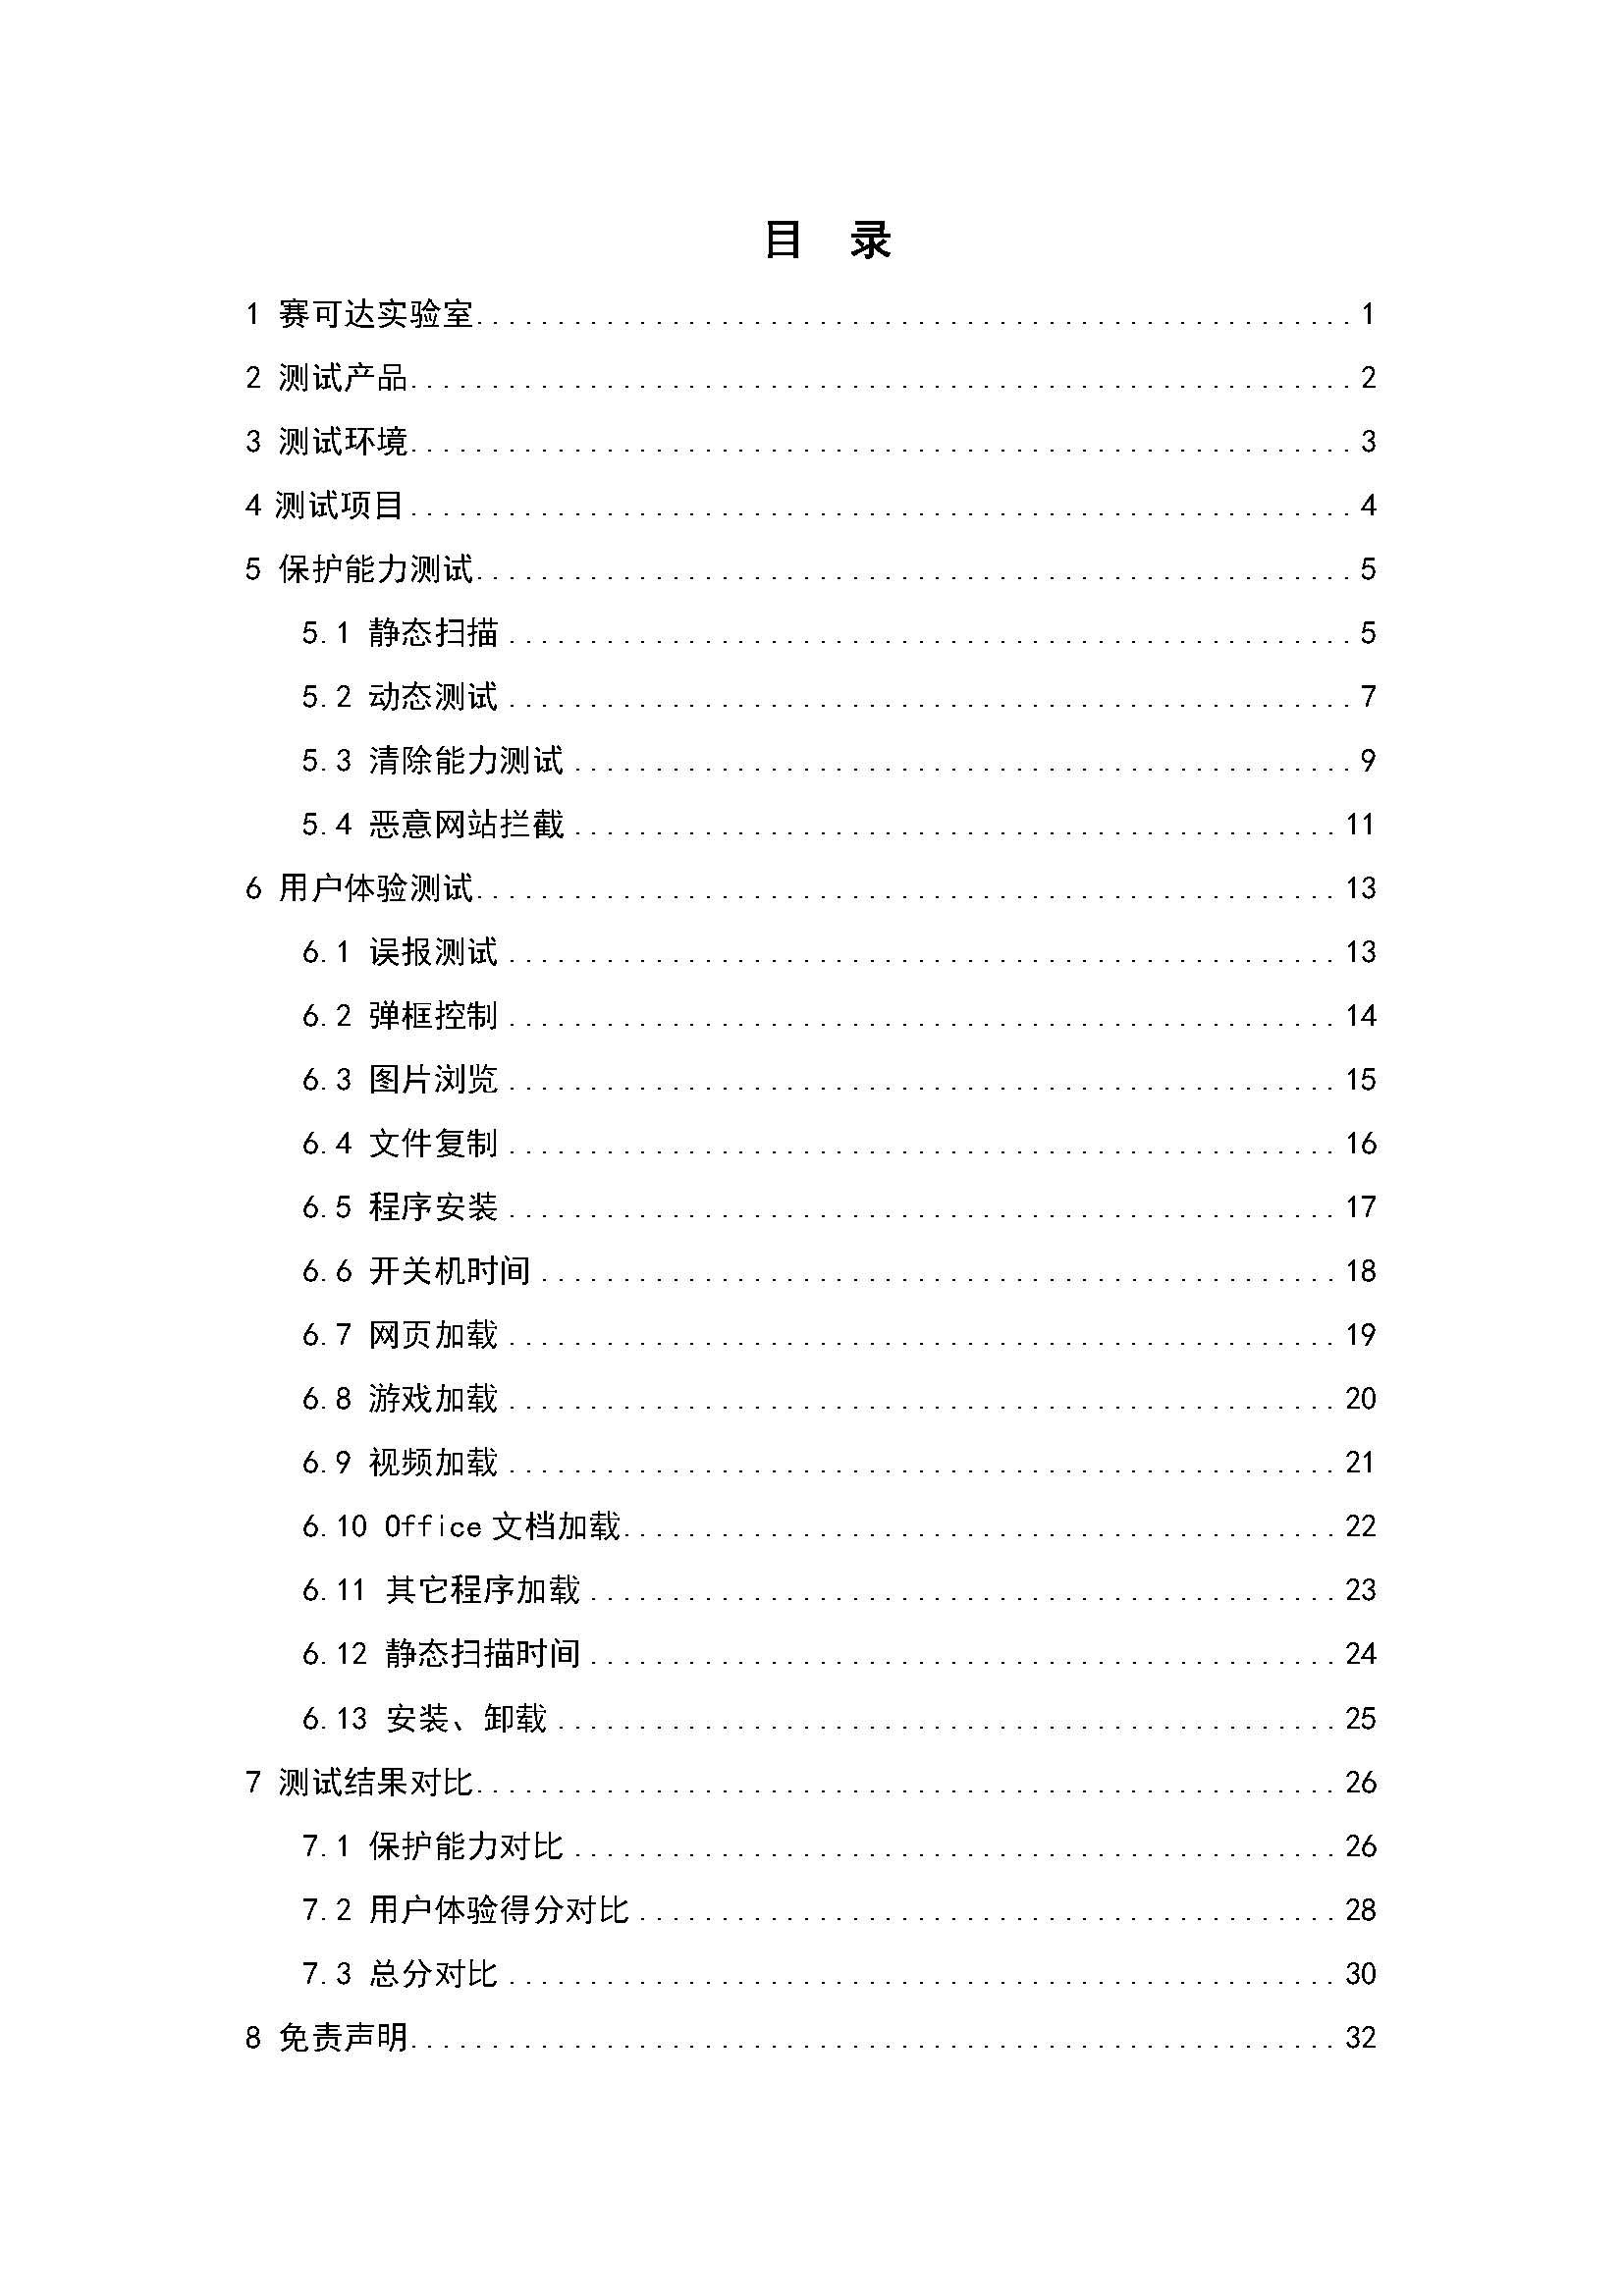 中文PC杀毒软件横评测试报告- Windows 8.1【中文版】.pdf (_Page_02.jpg